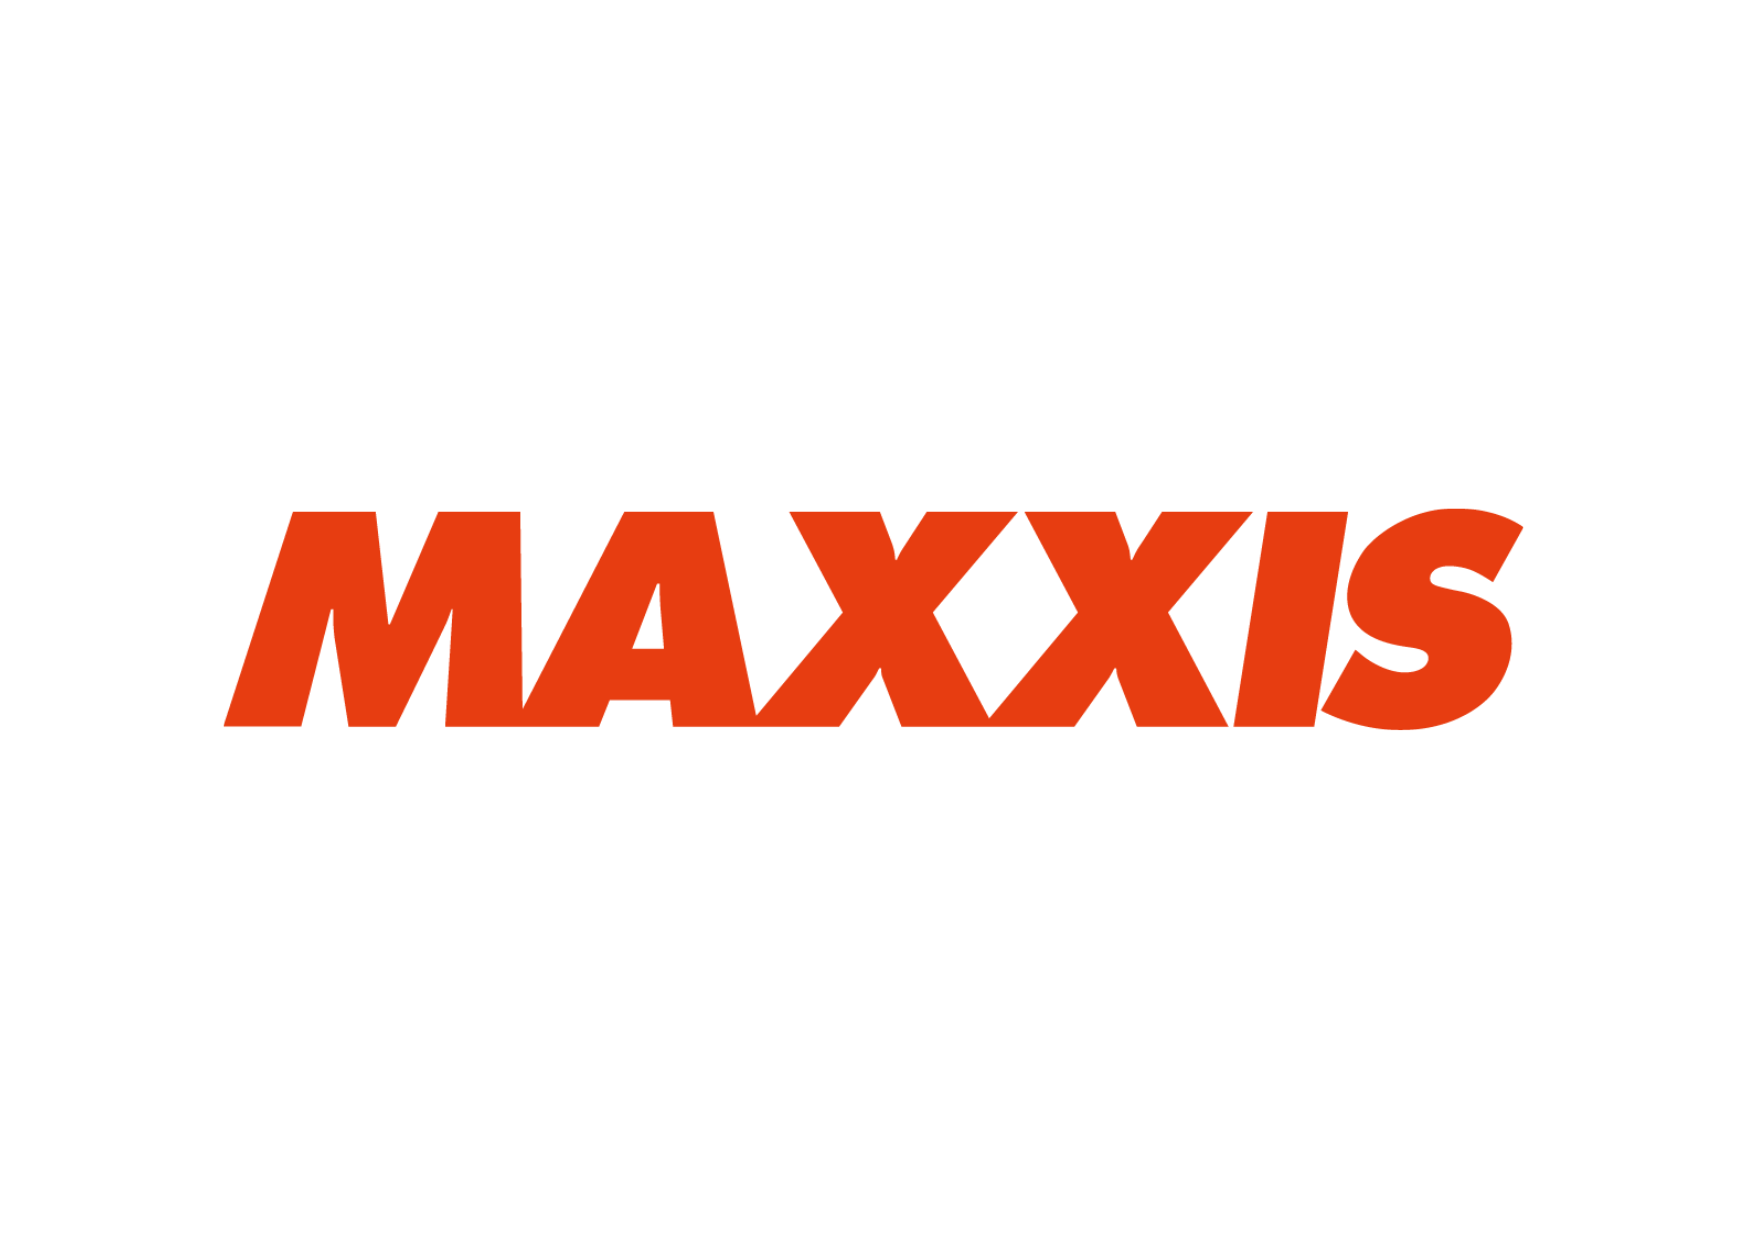 Logo MAXXIS